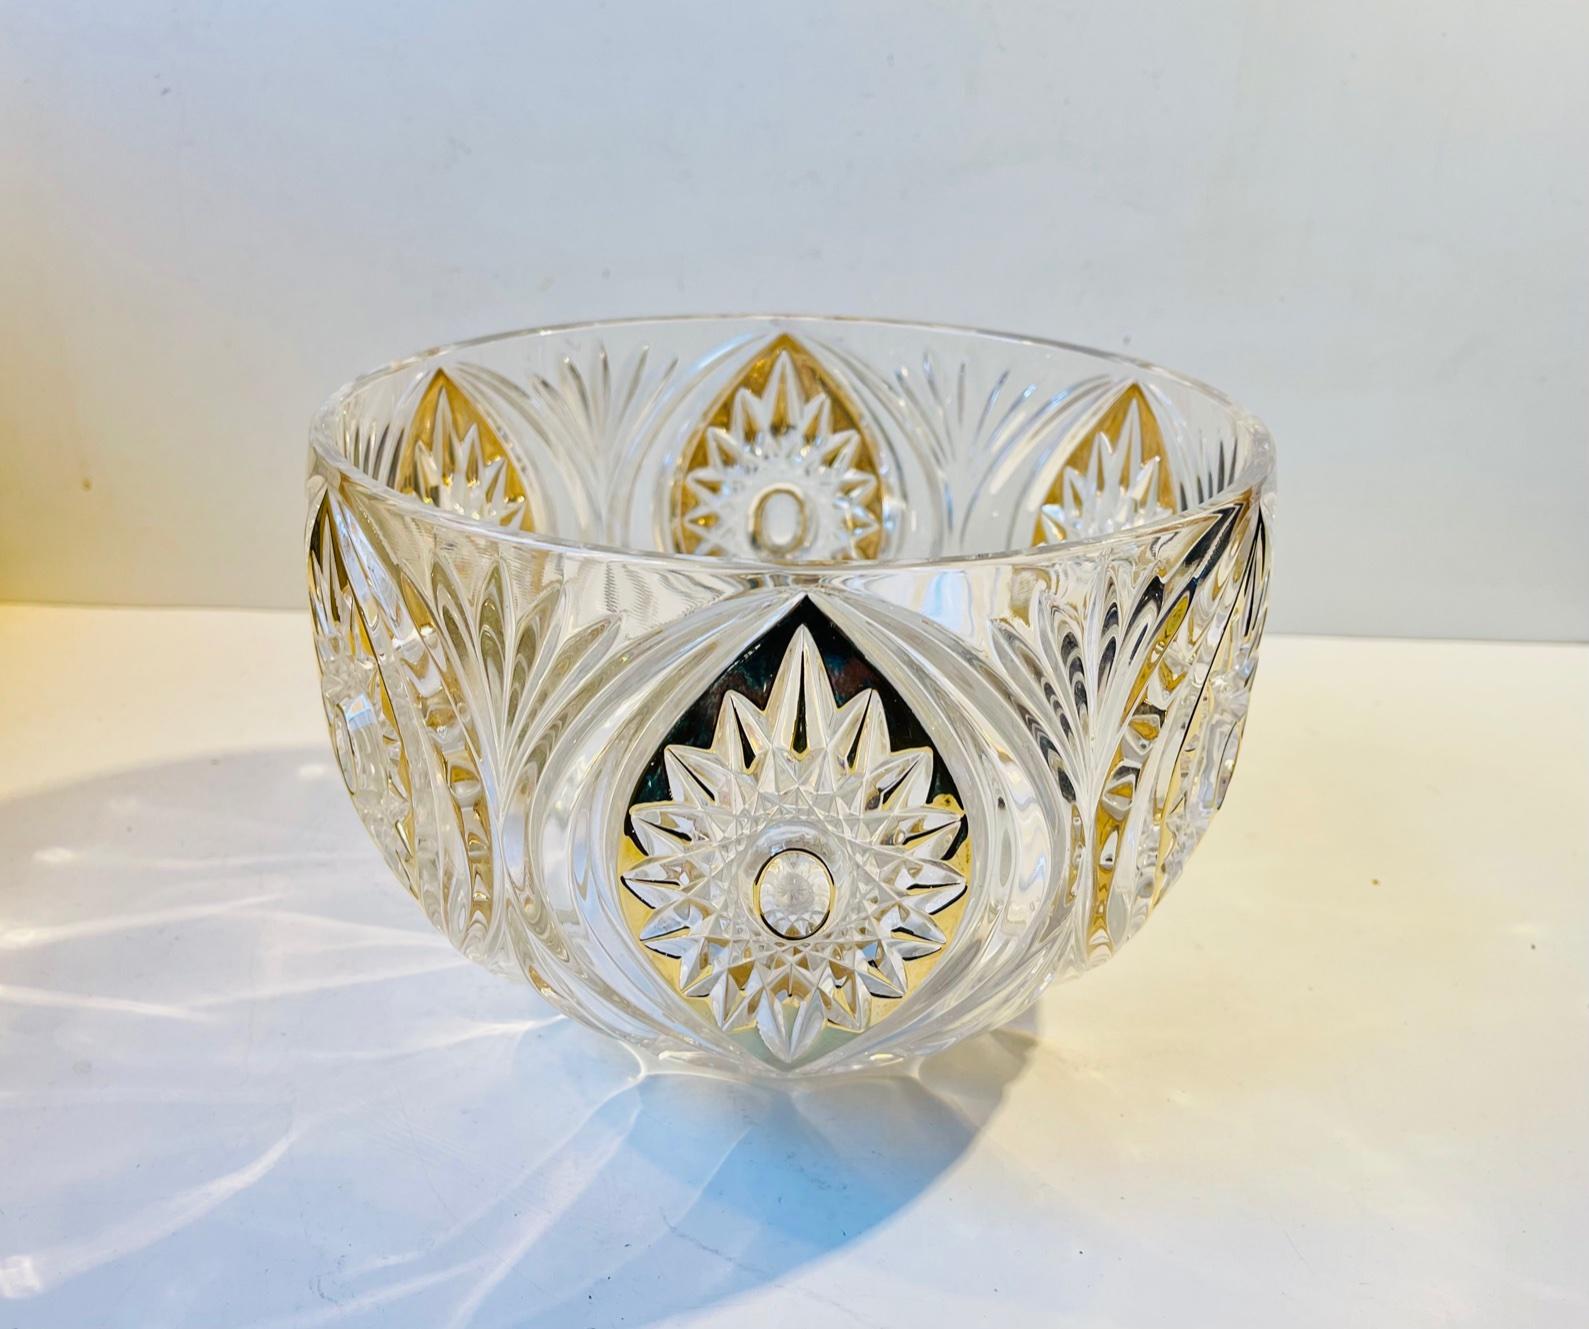 Coupe de centre de table de Bohème en cristal au plomb décoré d'émail doré et d'étoiles taillées et d'impressions florales. Il a été fabriqué en République tchèque (Bohème) vers 1940-50. Mesures : Diamètre : 23 cm, hauteur : 16 cm.